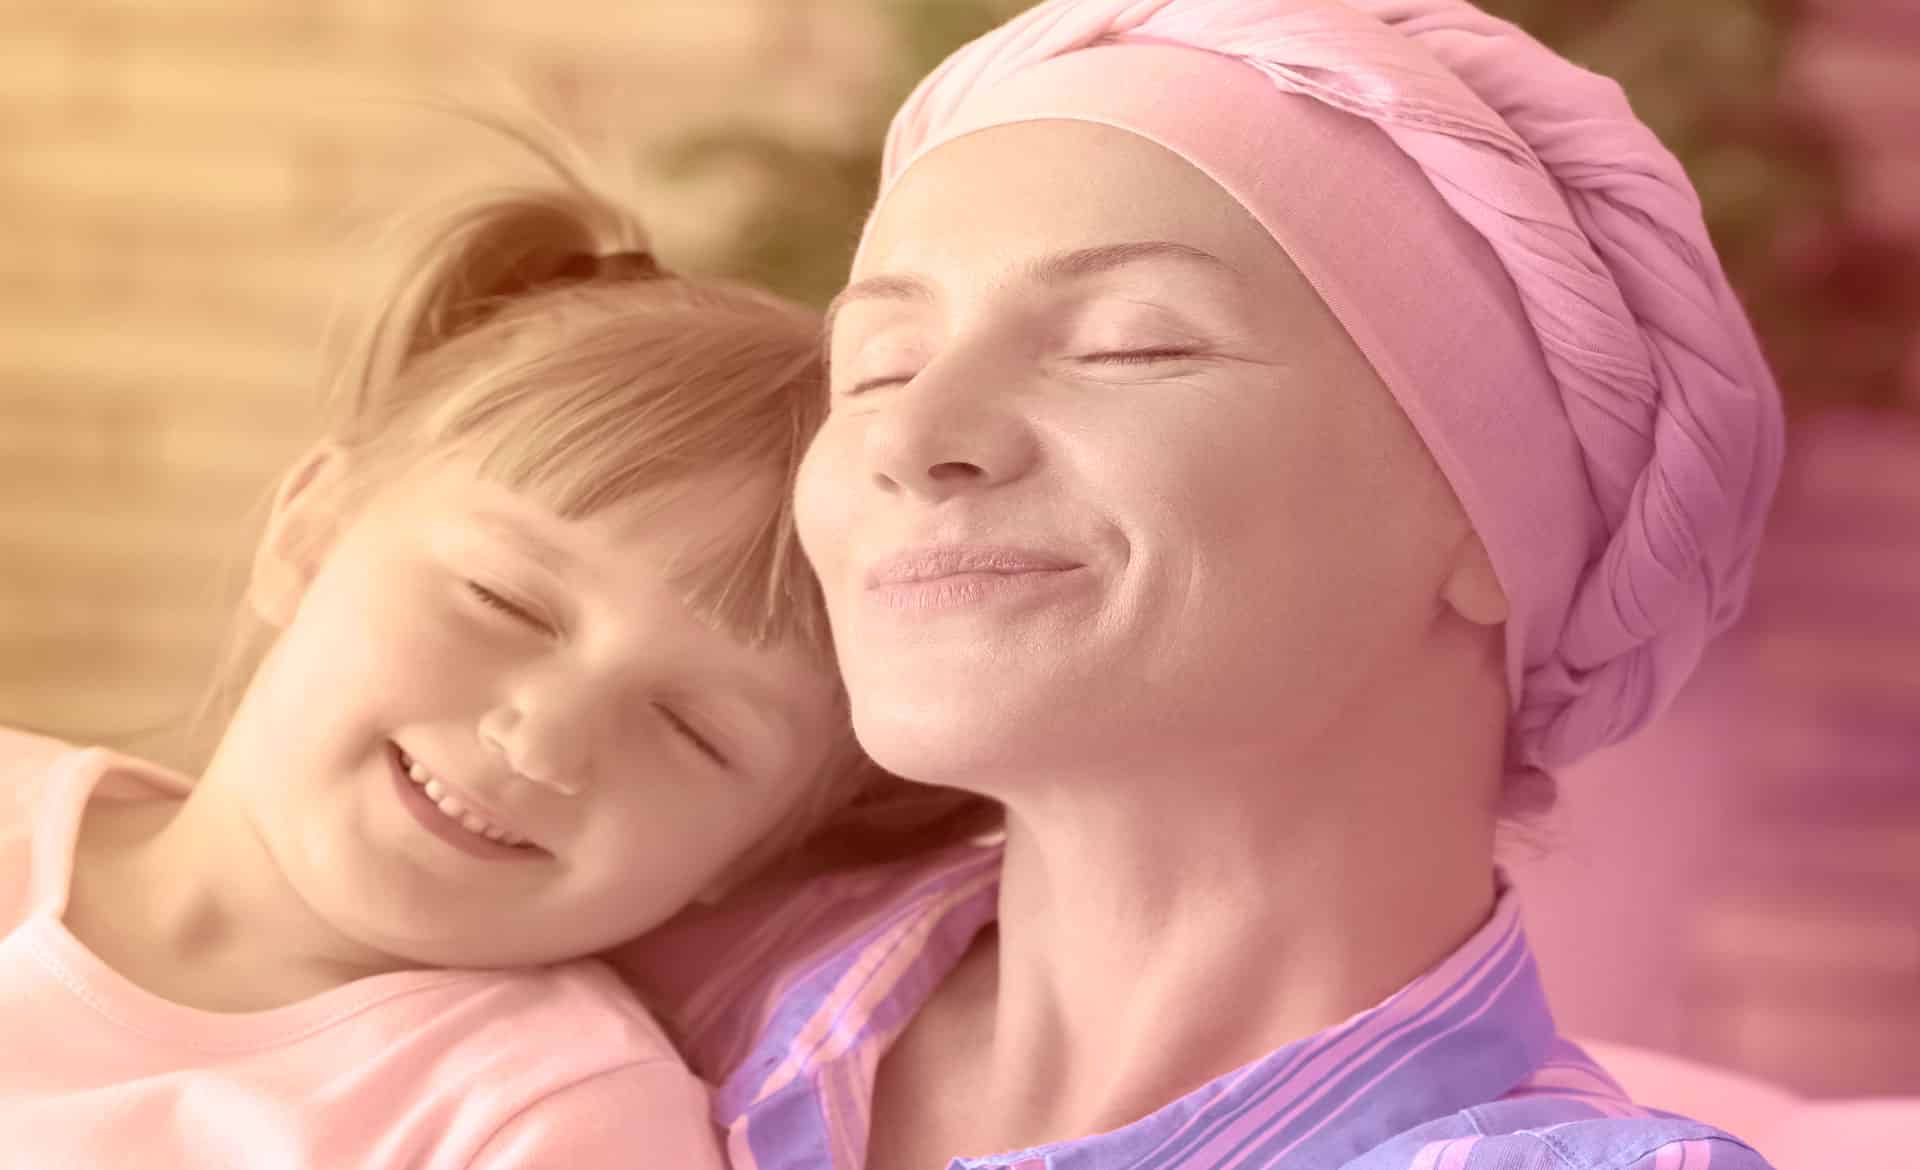 Dez perguntas sobre quimioterapia no câncer de mama inicial durante a pandemia